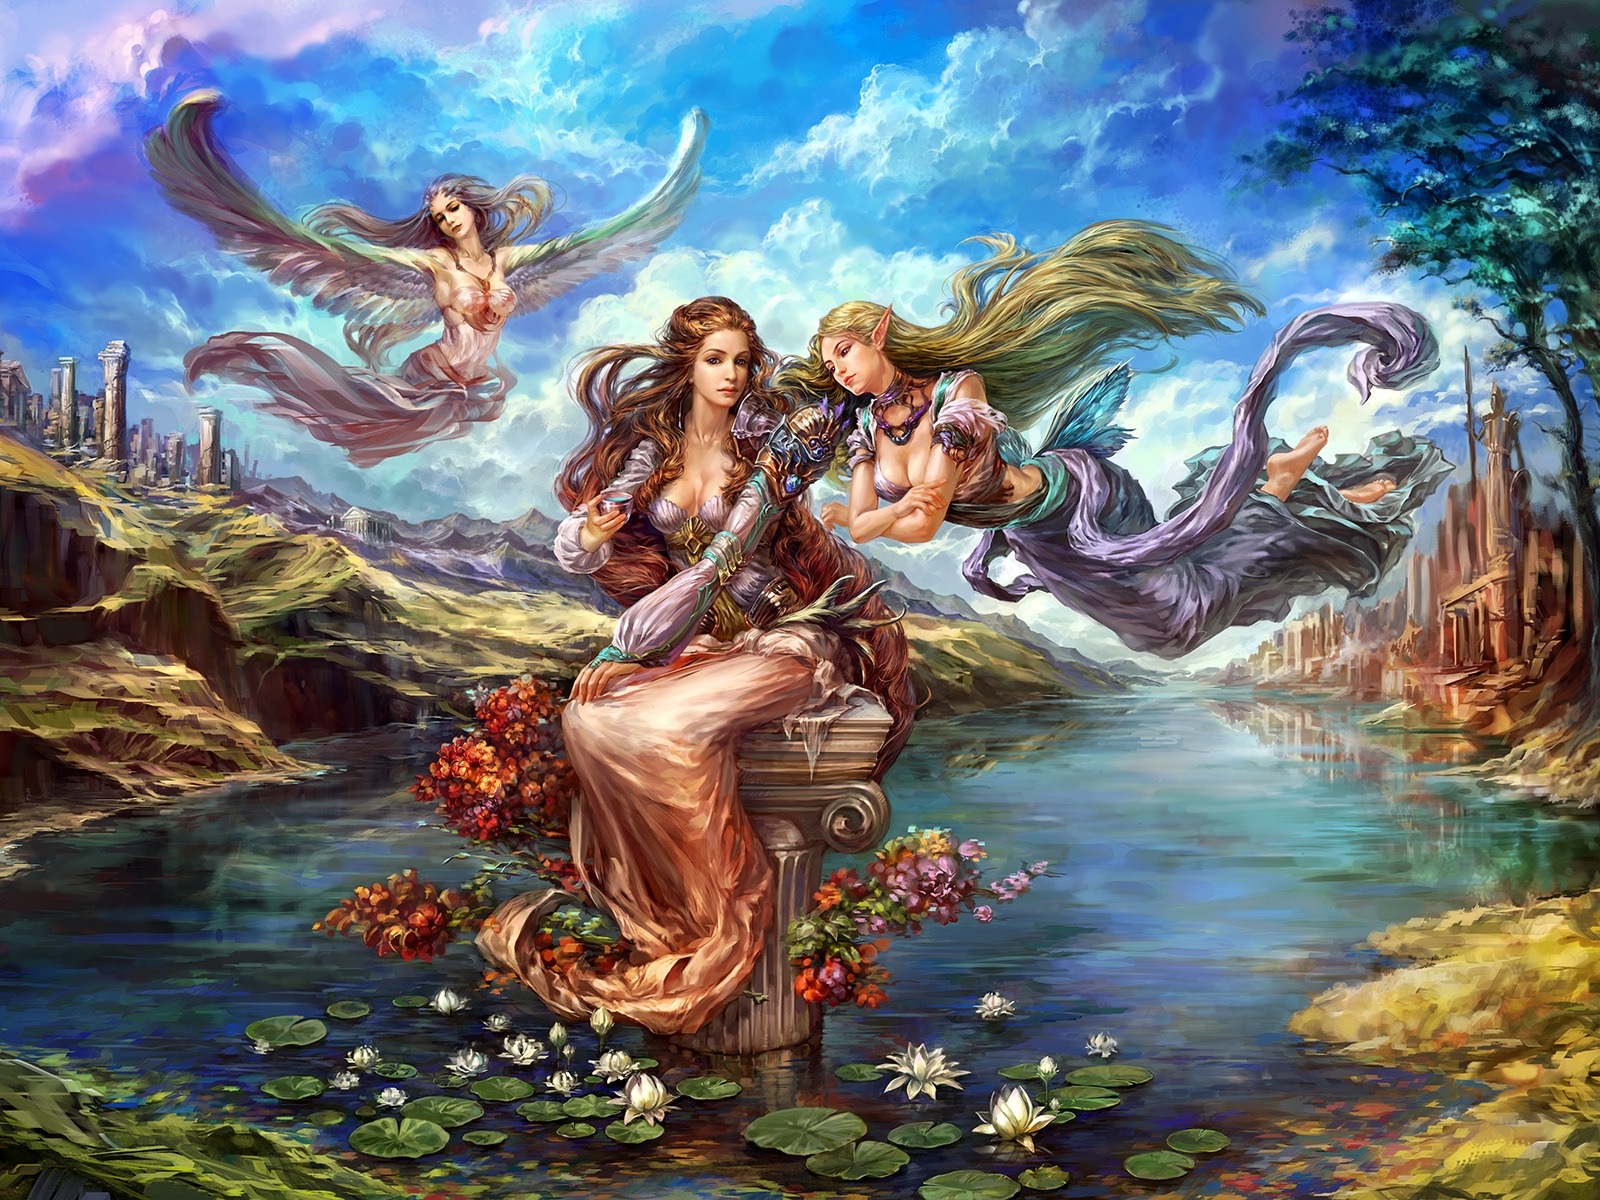 Fantasy Elves from Forsaken World for 1600 x 1200 resolution